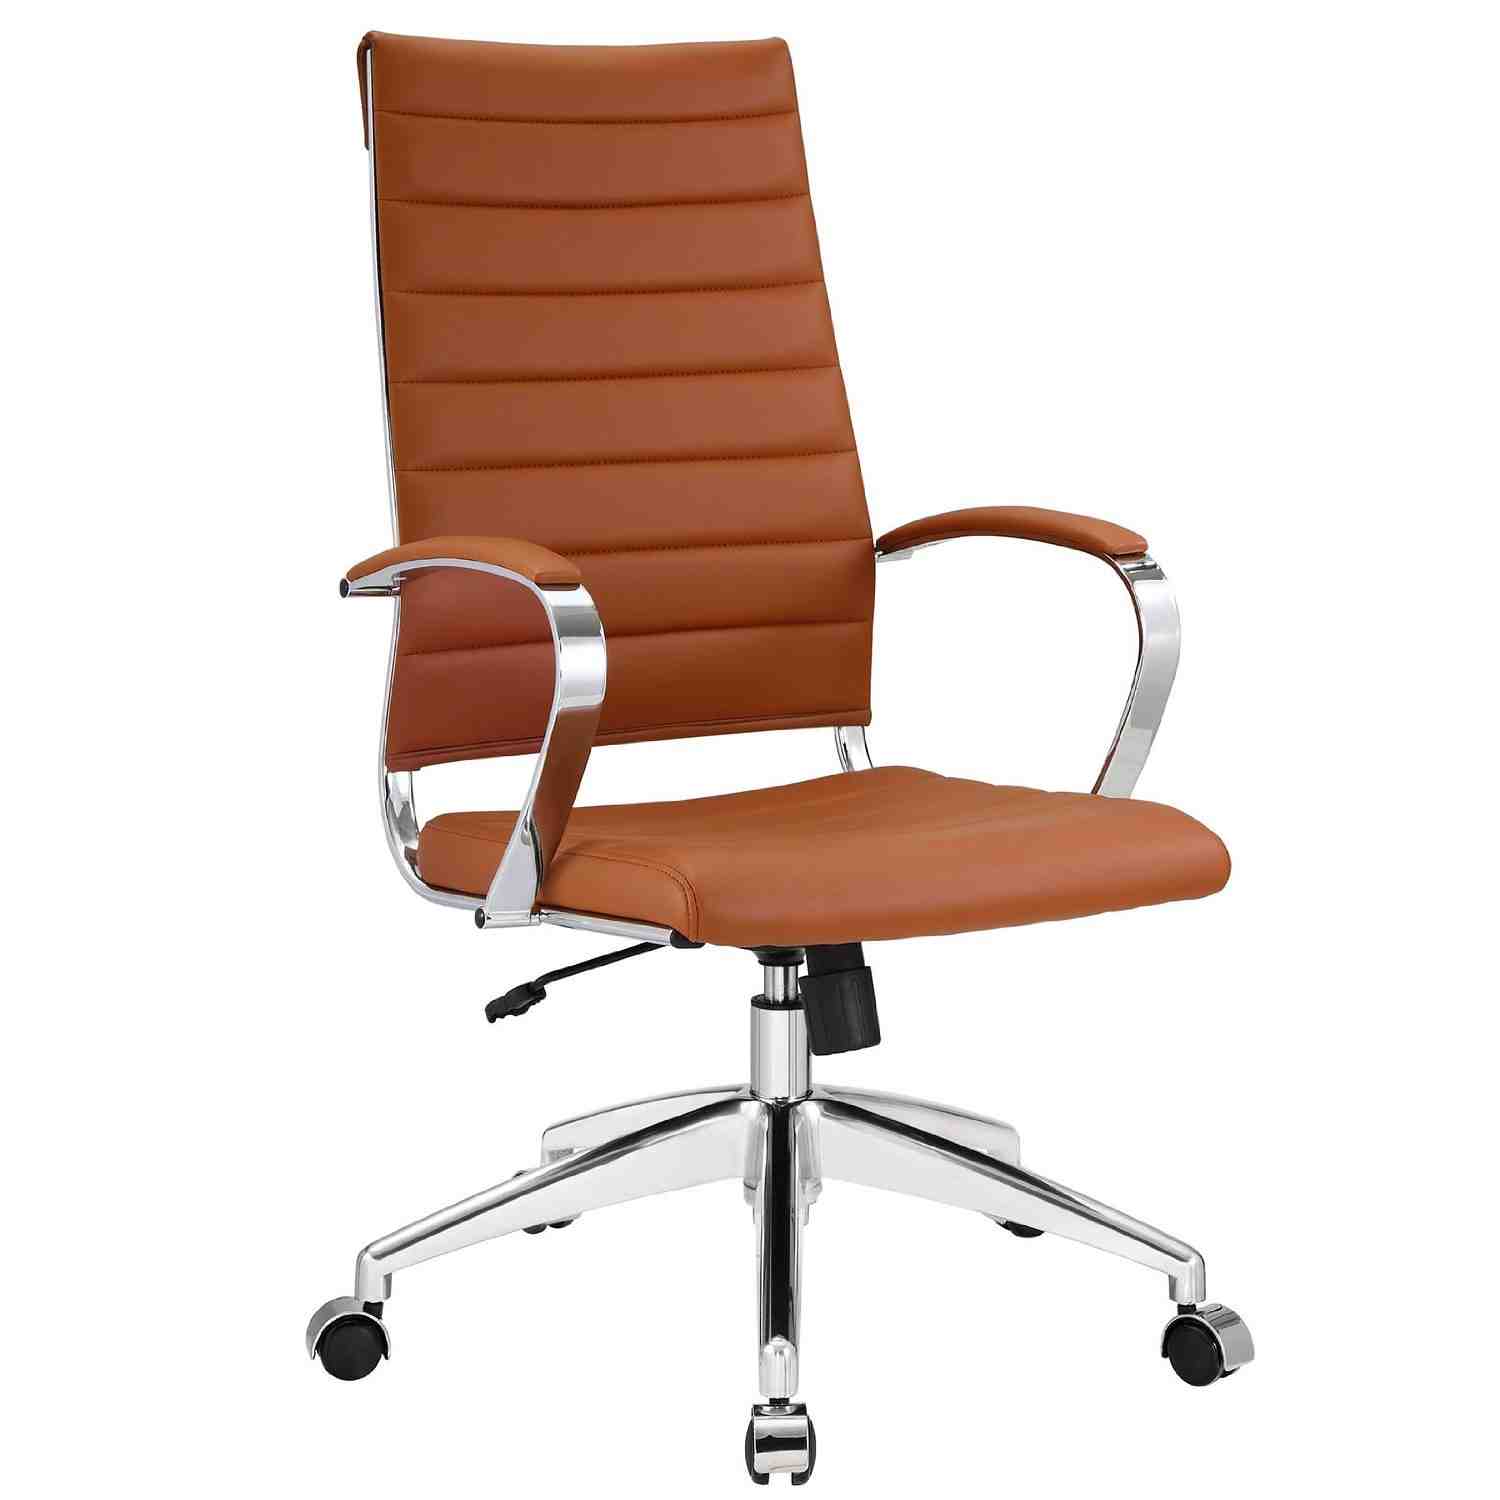 Modern Leather Office Chair - Decor IdeasDecor Ideas